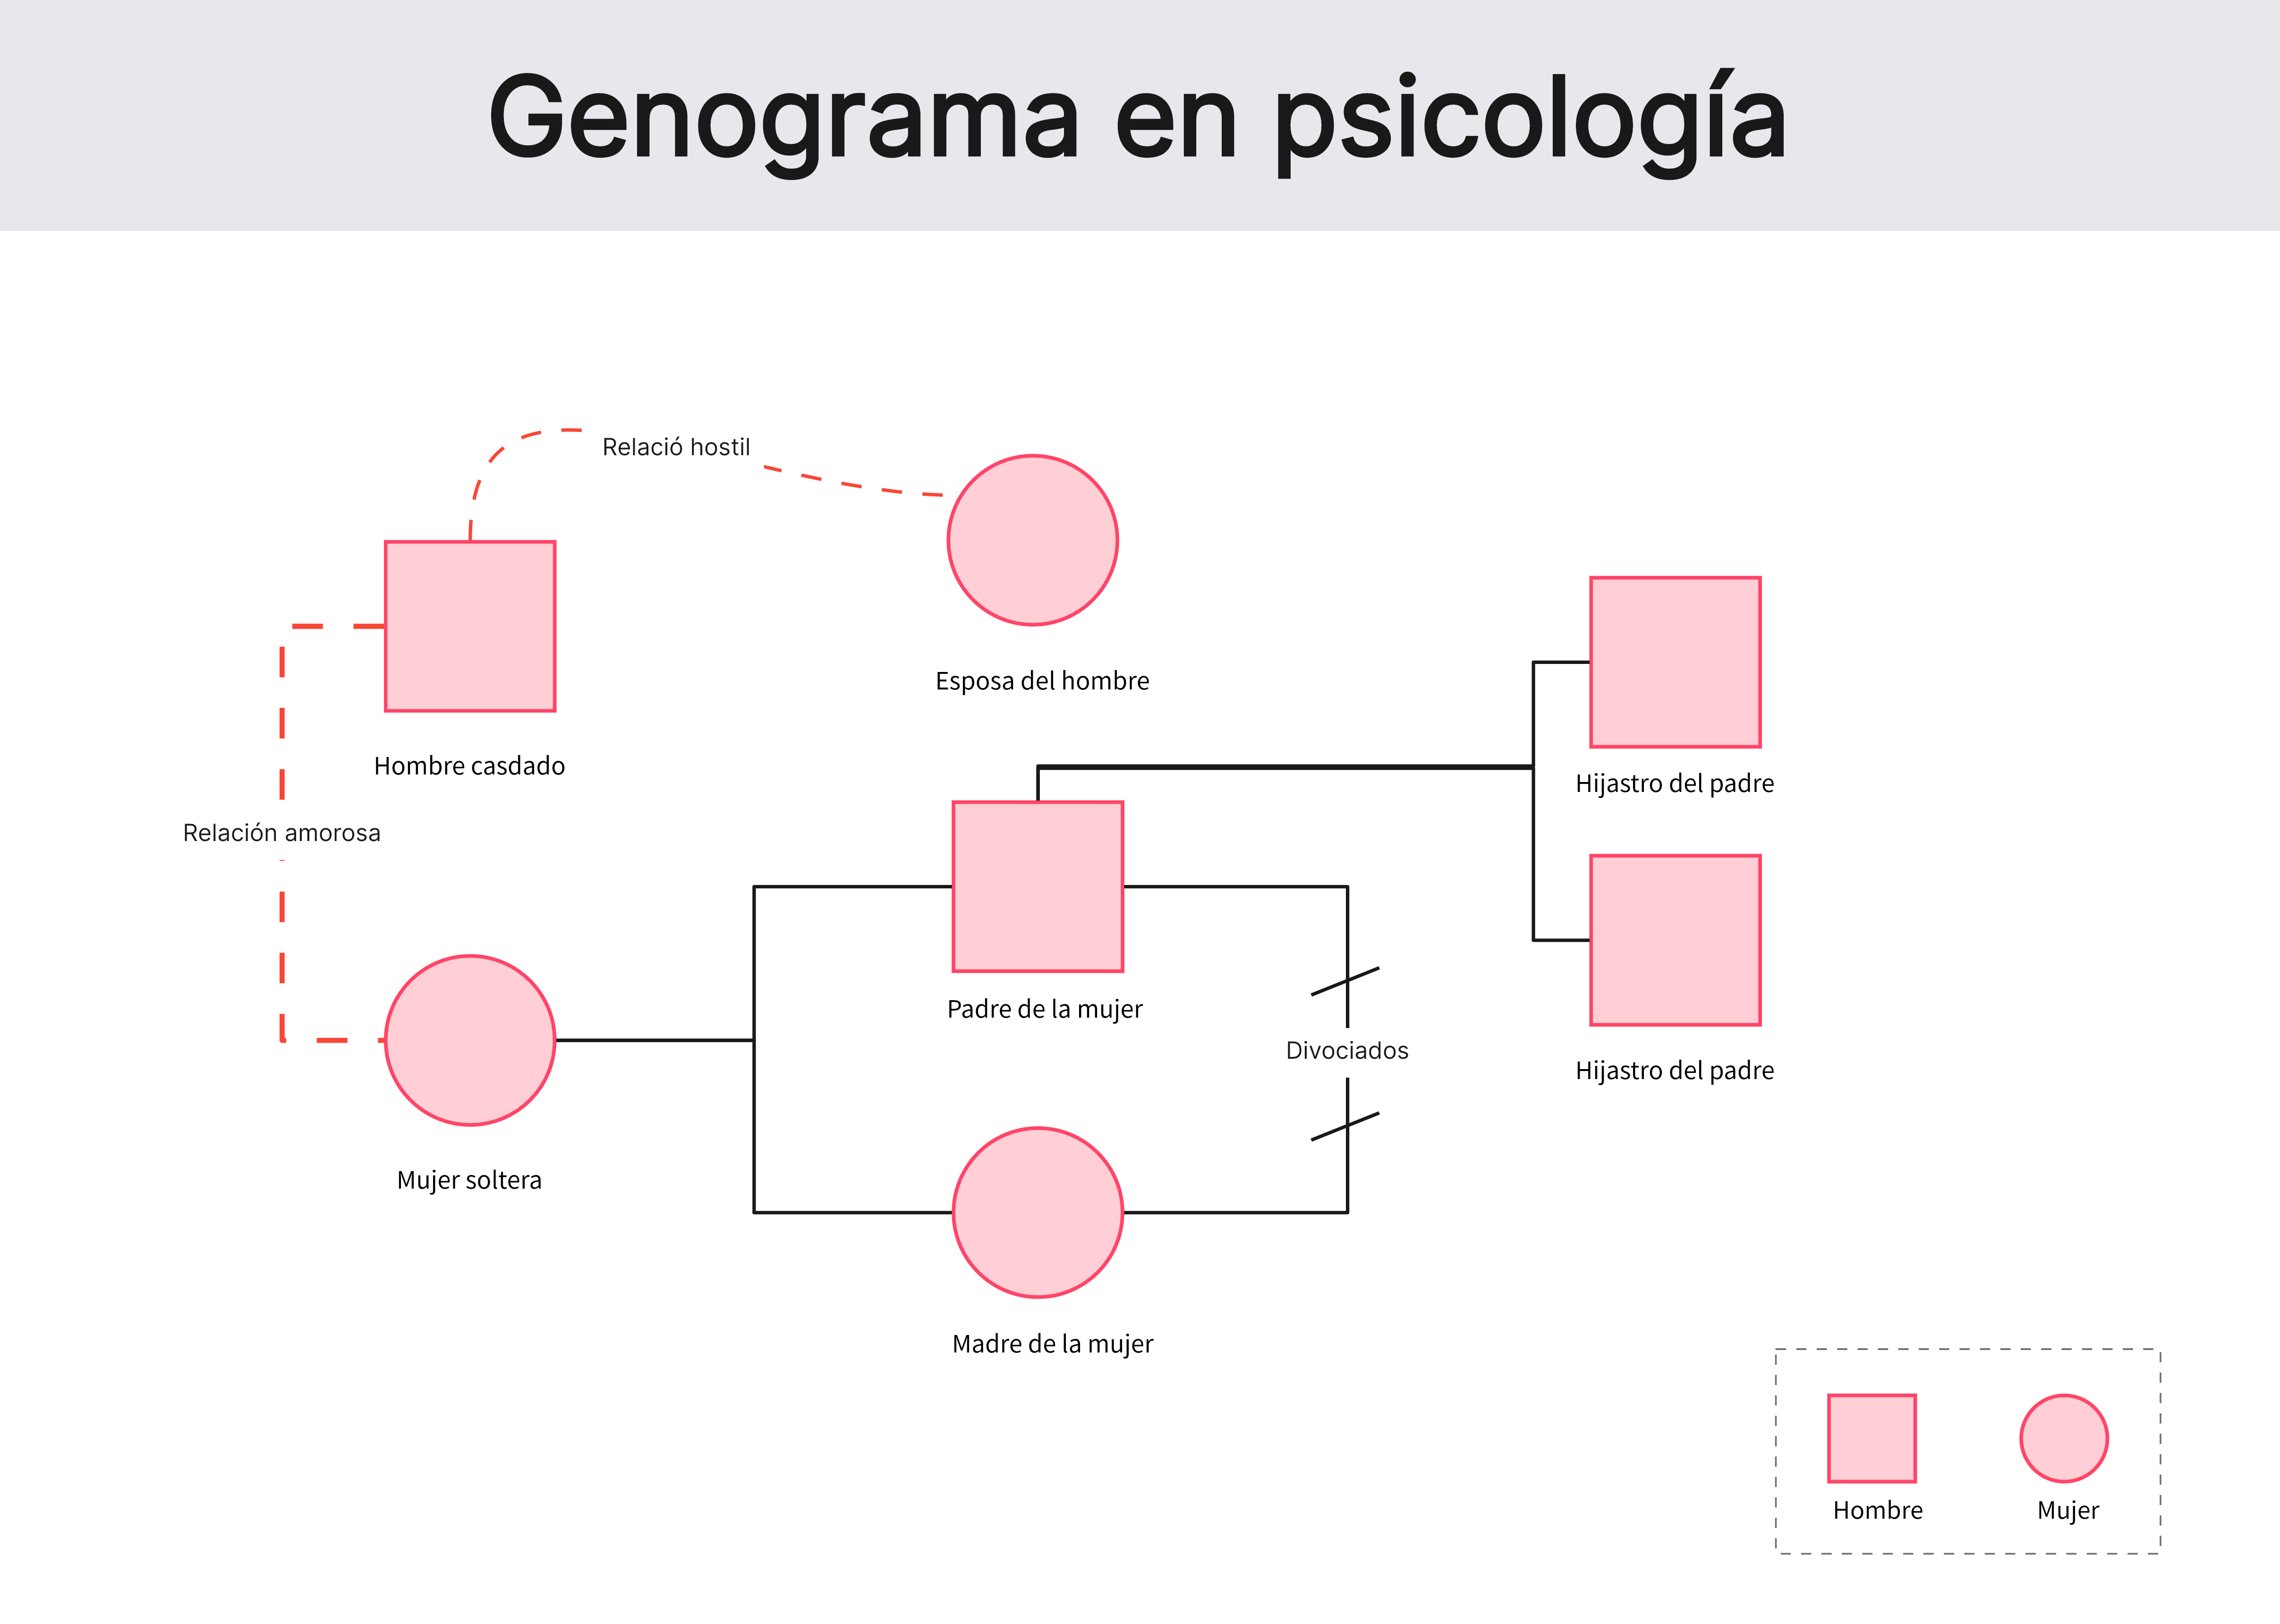 Ejemplo de genograma en psicología